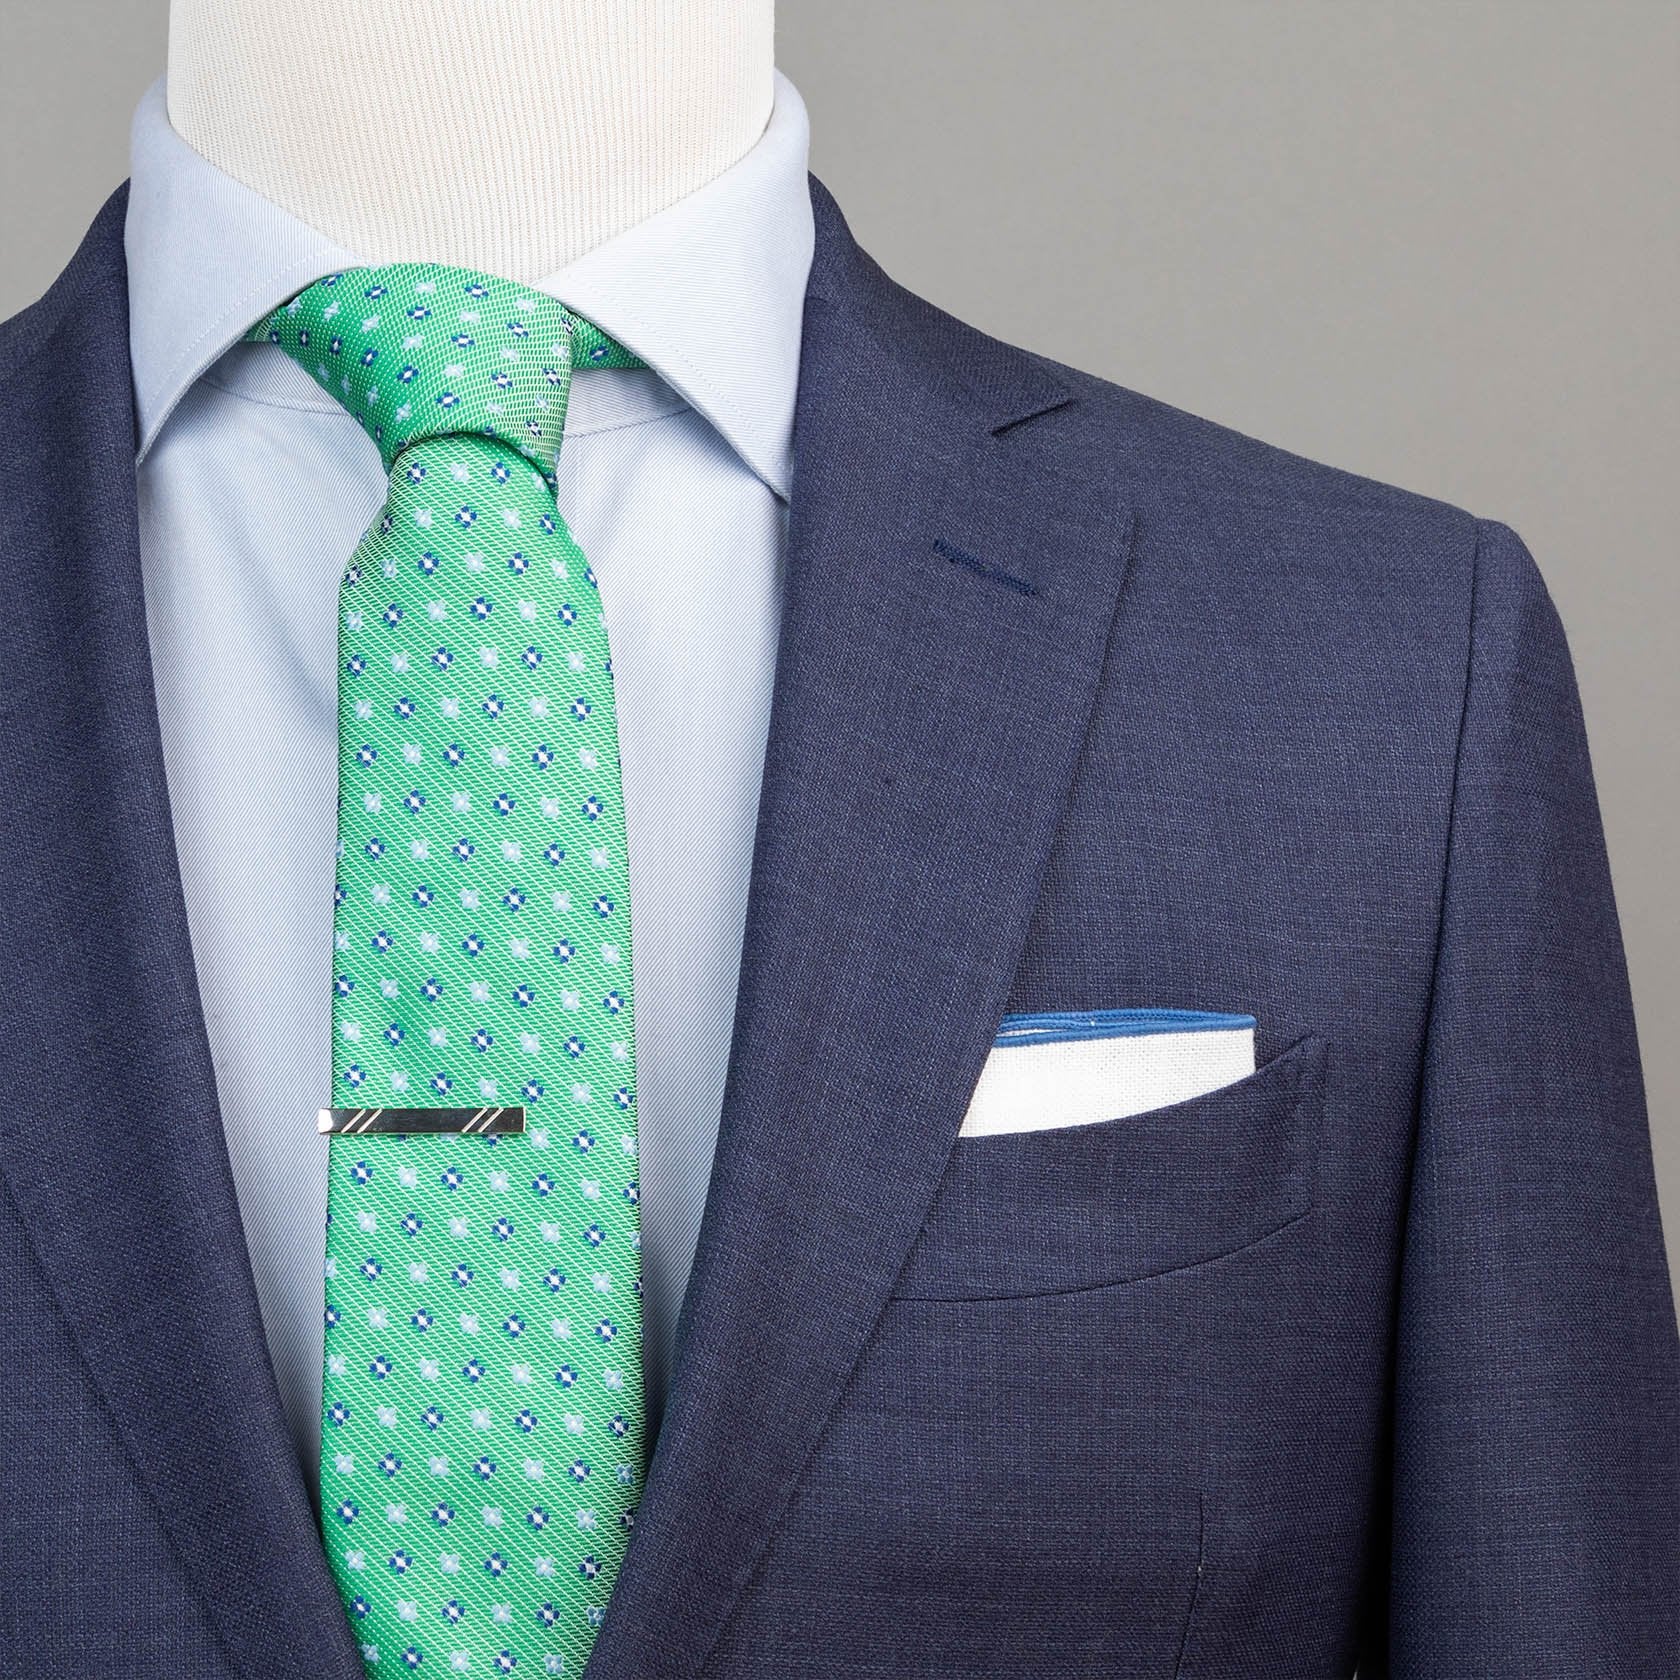 Green & Navy Neat Foulard Tie - SprezzaBox